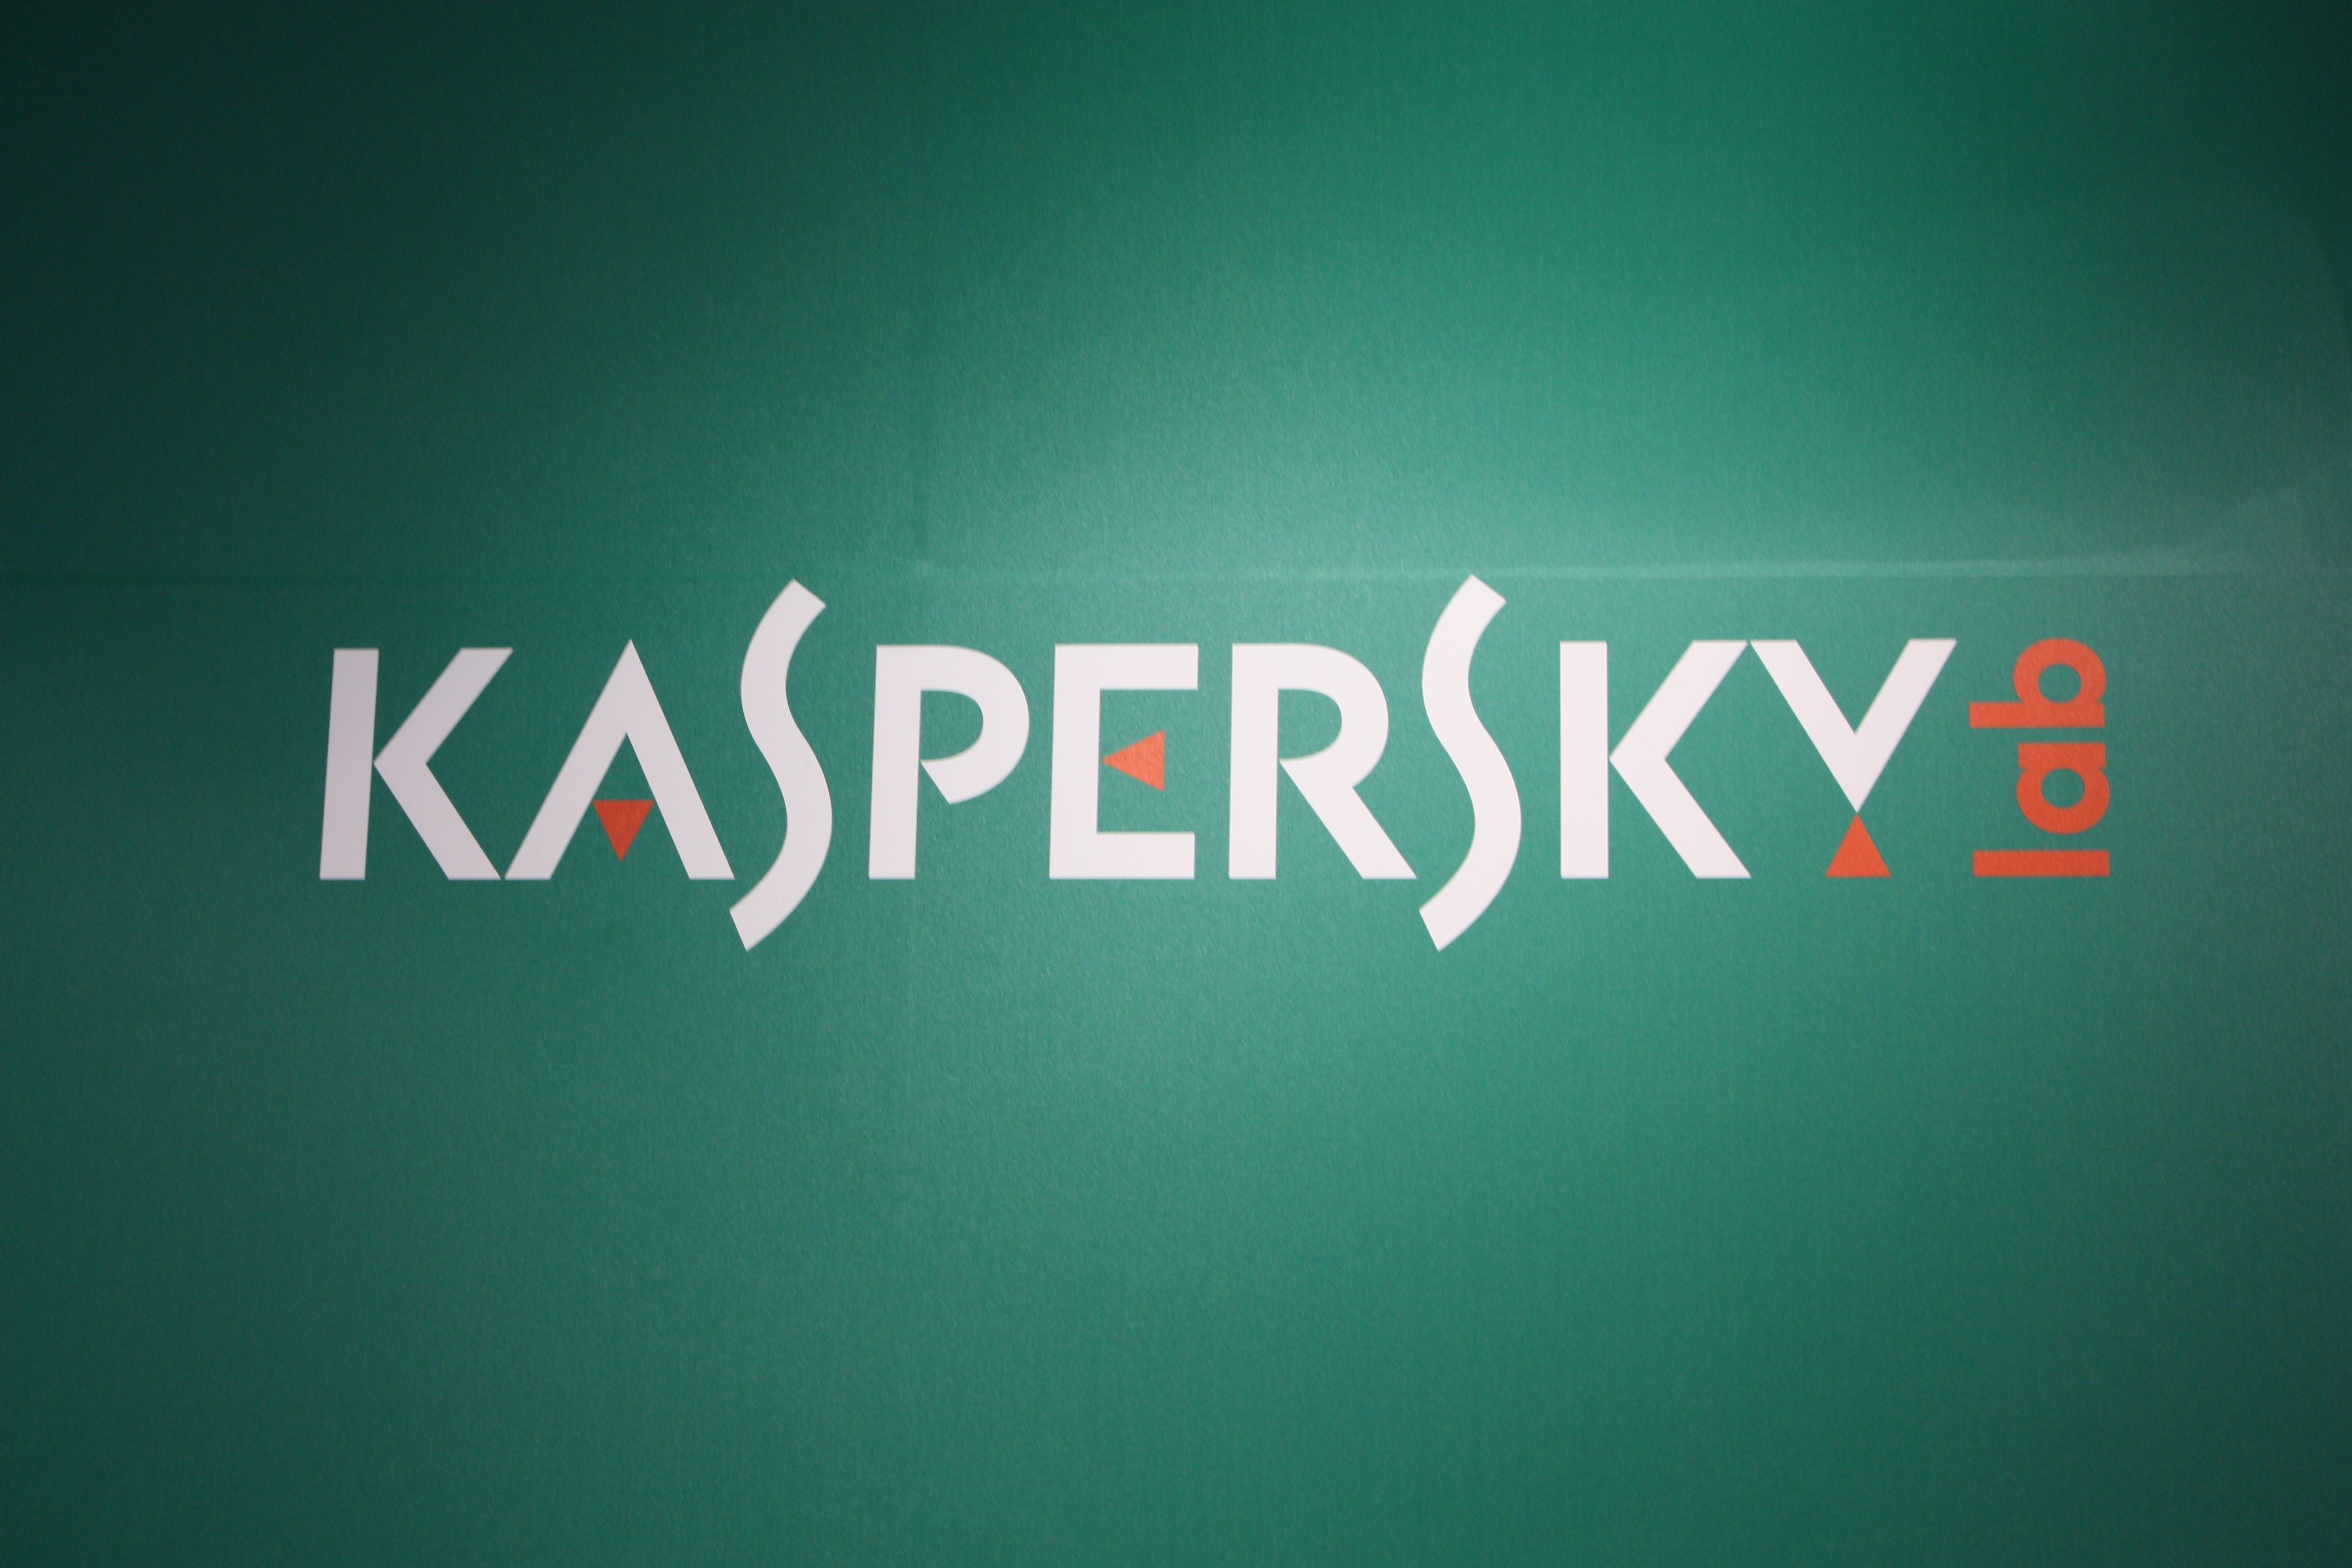 Kaspersky et Facebook